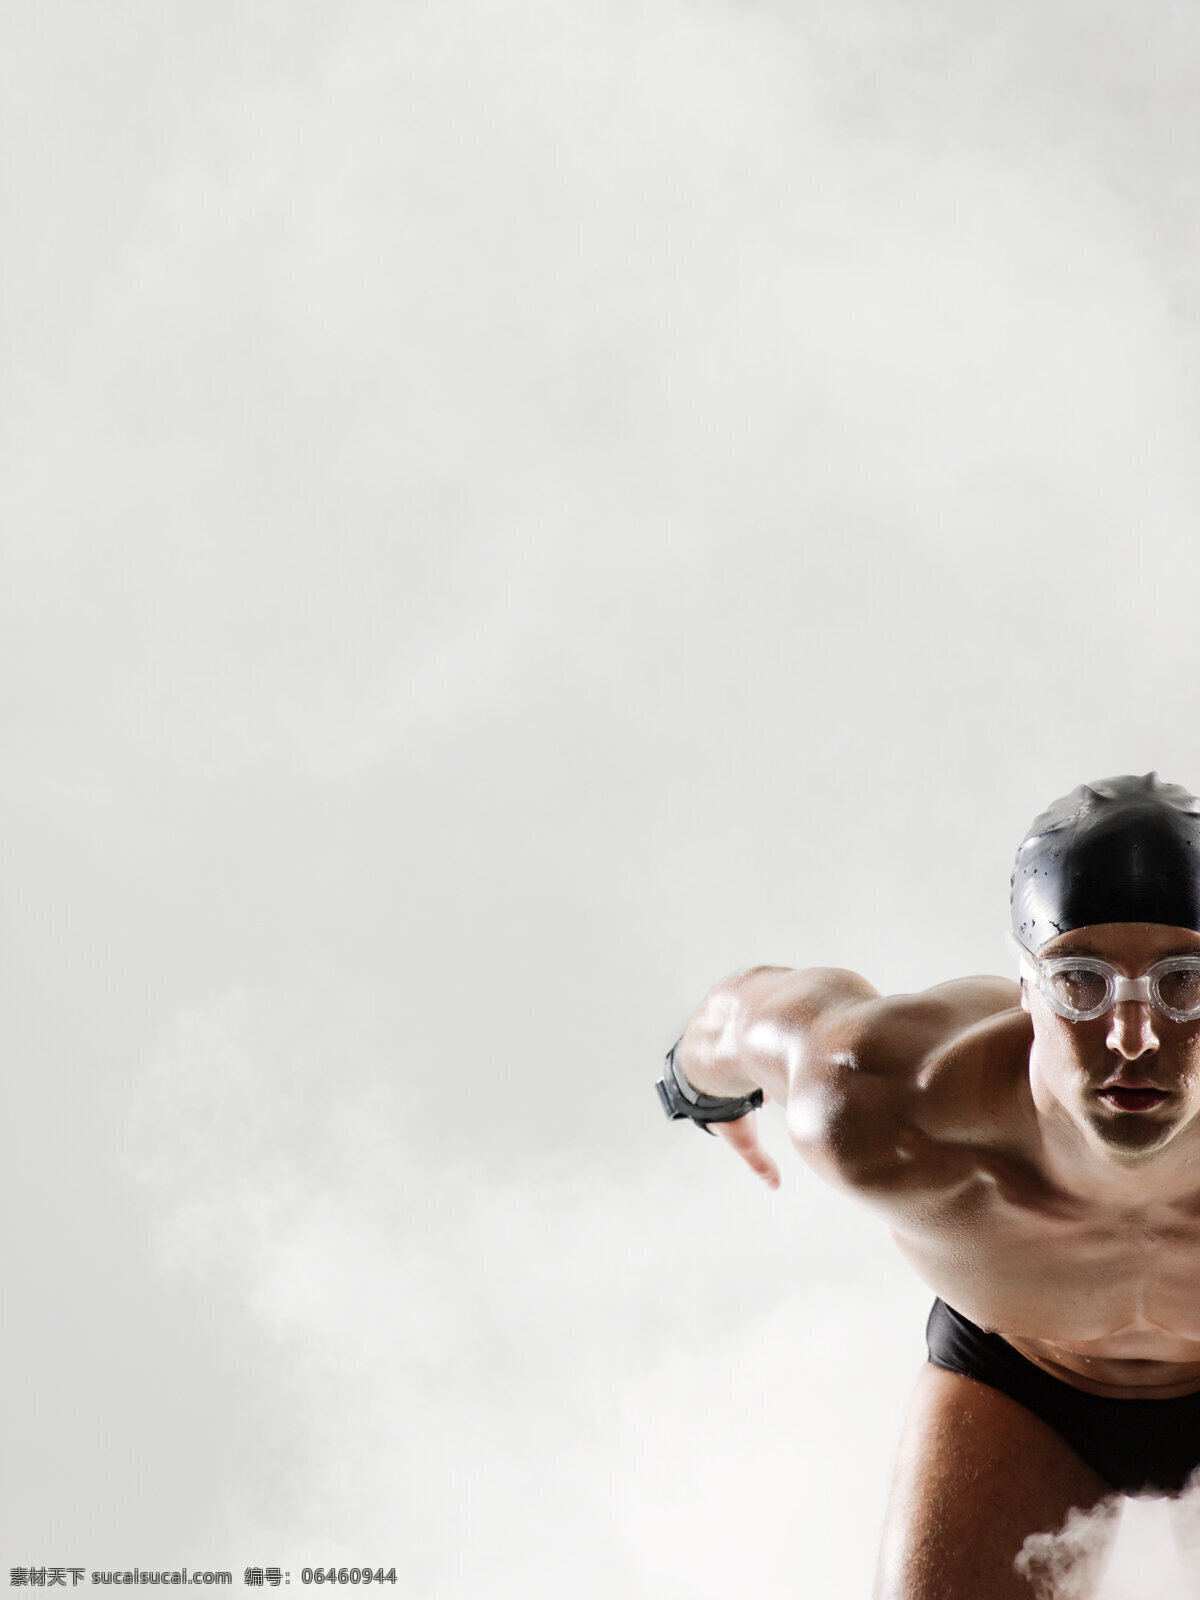 准备 比赛 跳水 运动员 竖构图 男人 外国男人 游泳 泳衣 游泳帽 游泳眼镜 动作 姿势 预备 强壮 体育 健康 健壮 肌肉 高清图片 体育运动 生活百科